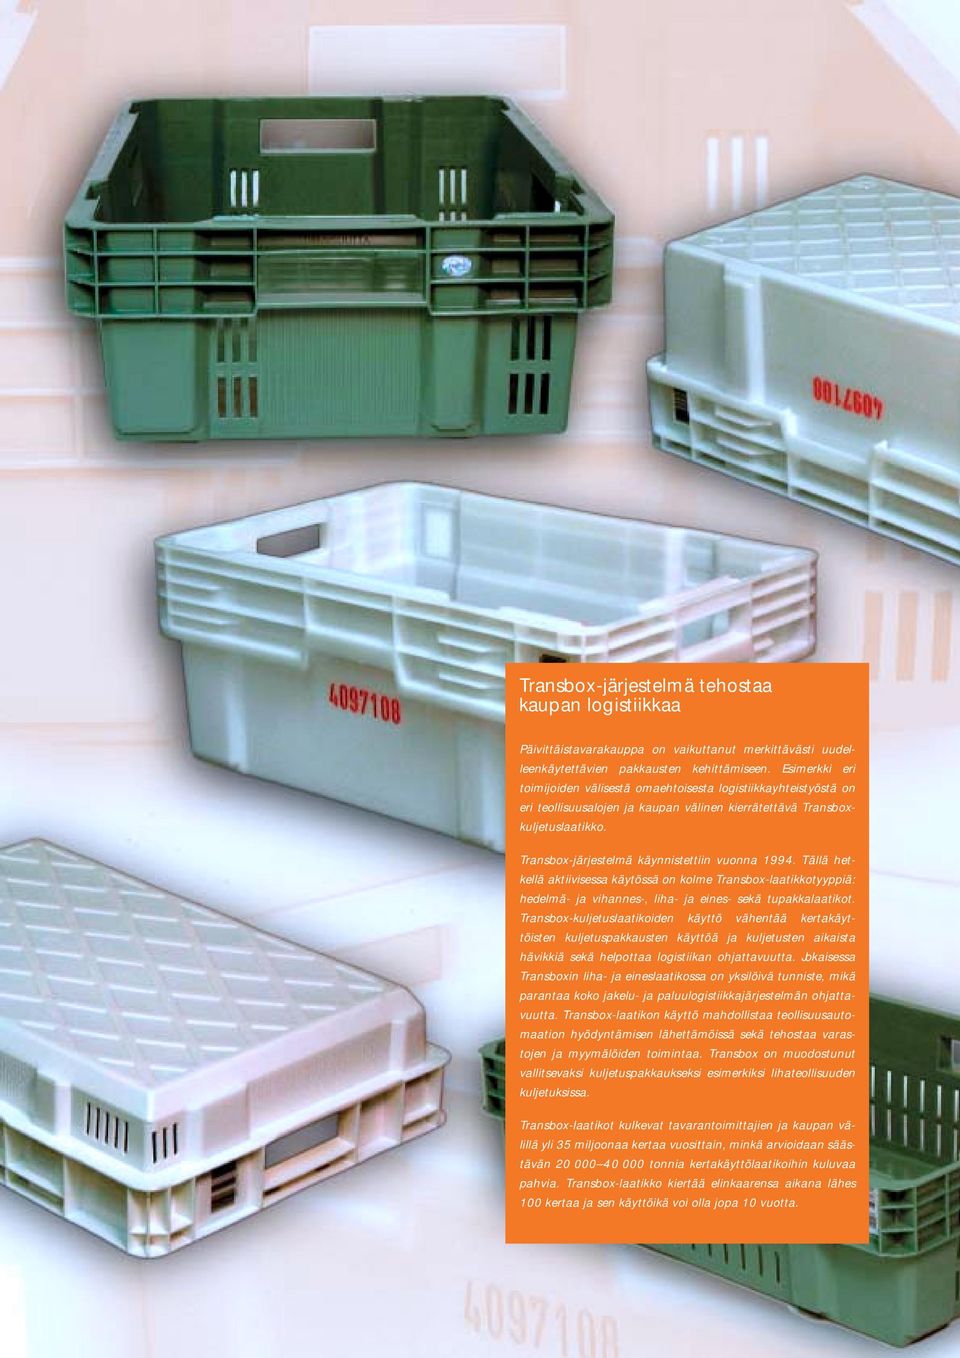 Transbox-järjestelmä käynnistettiin vuonna 1994. Tällä hetkellä aktiivisessa käytössä on kolme Transbox-laatikkotyyppiä: hedelmä- ja vihannes-, liha- ja eines- sekä tupakkalaatikot.